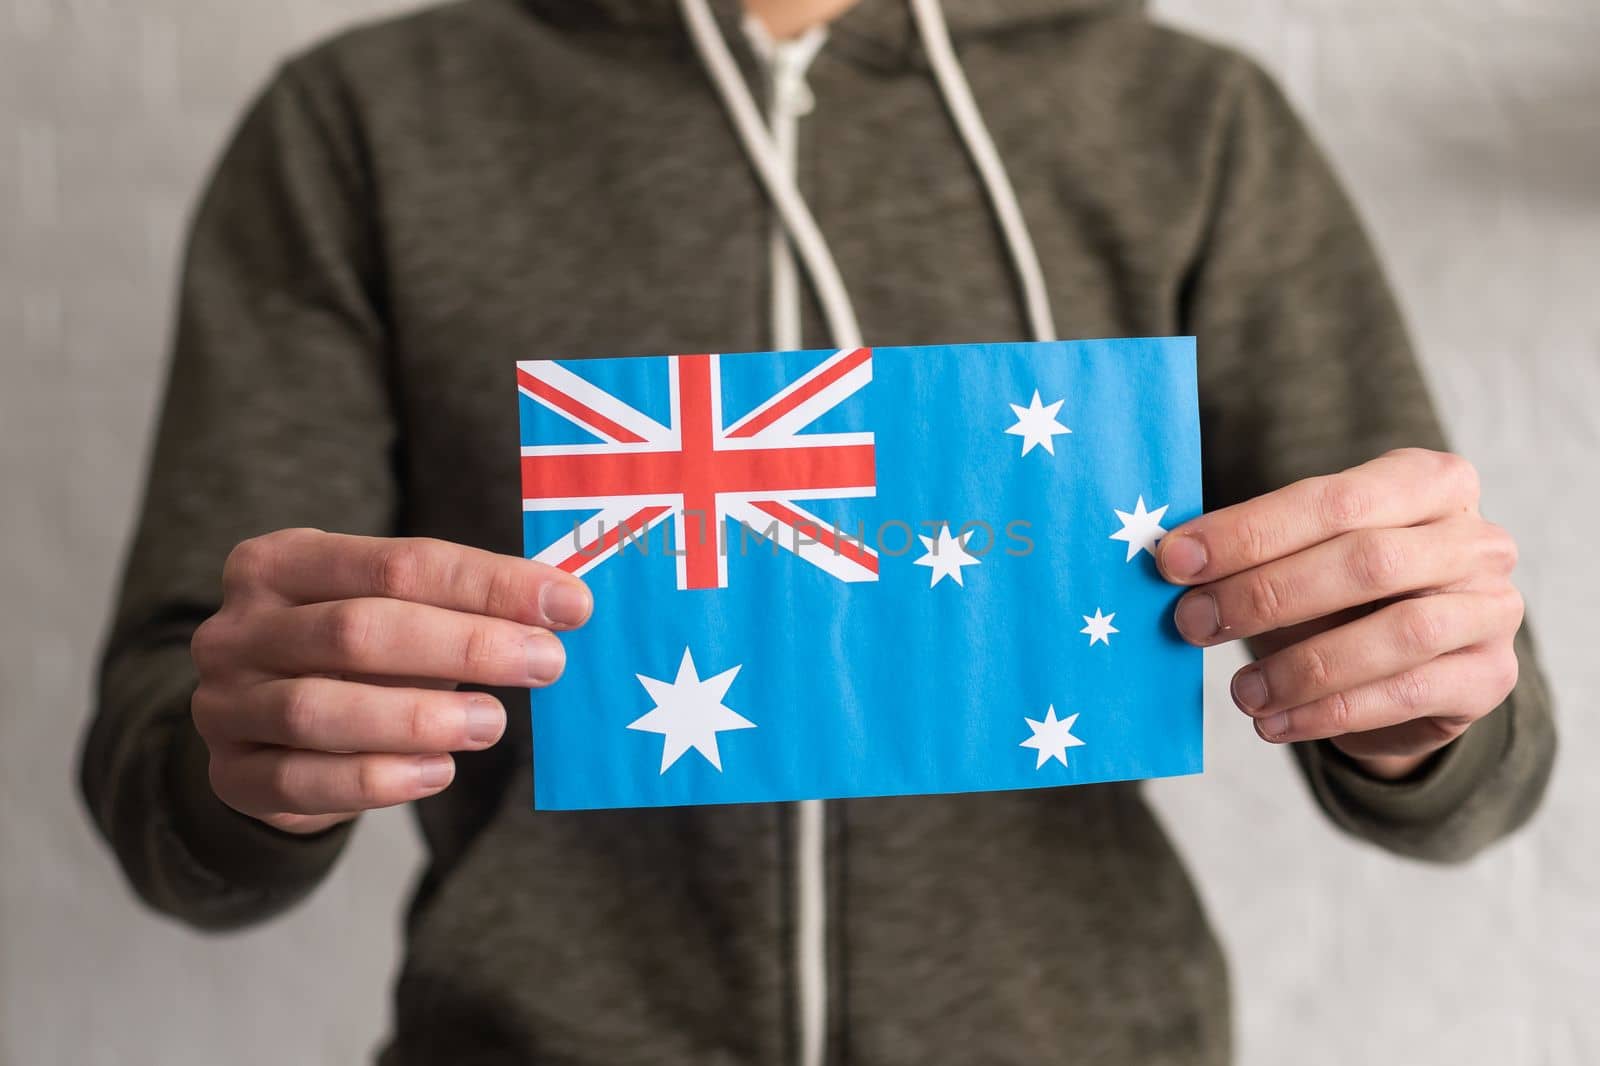 Australia country union jack flag by Andelov13